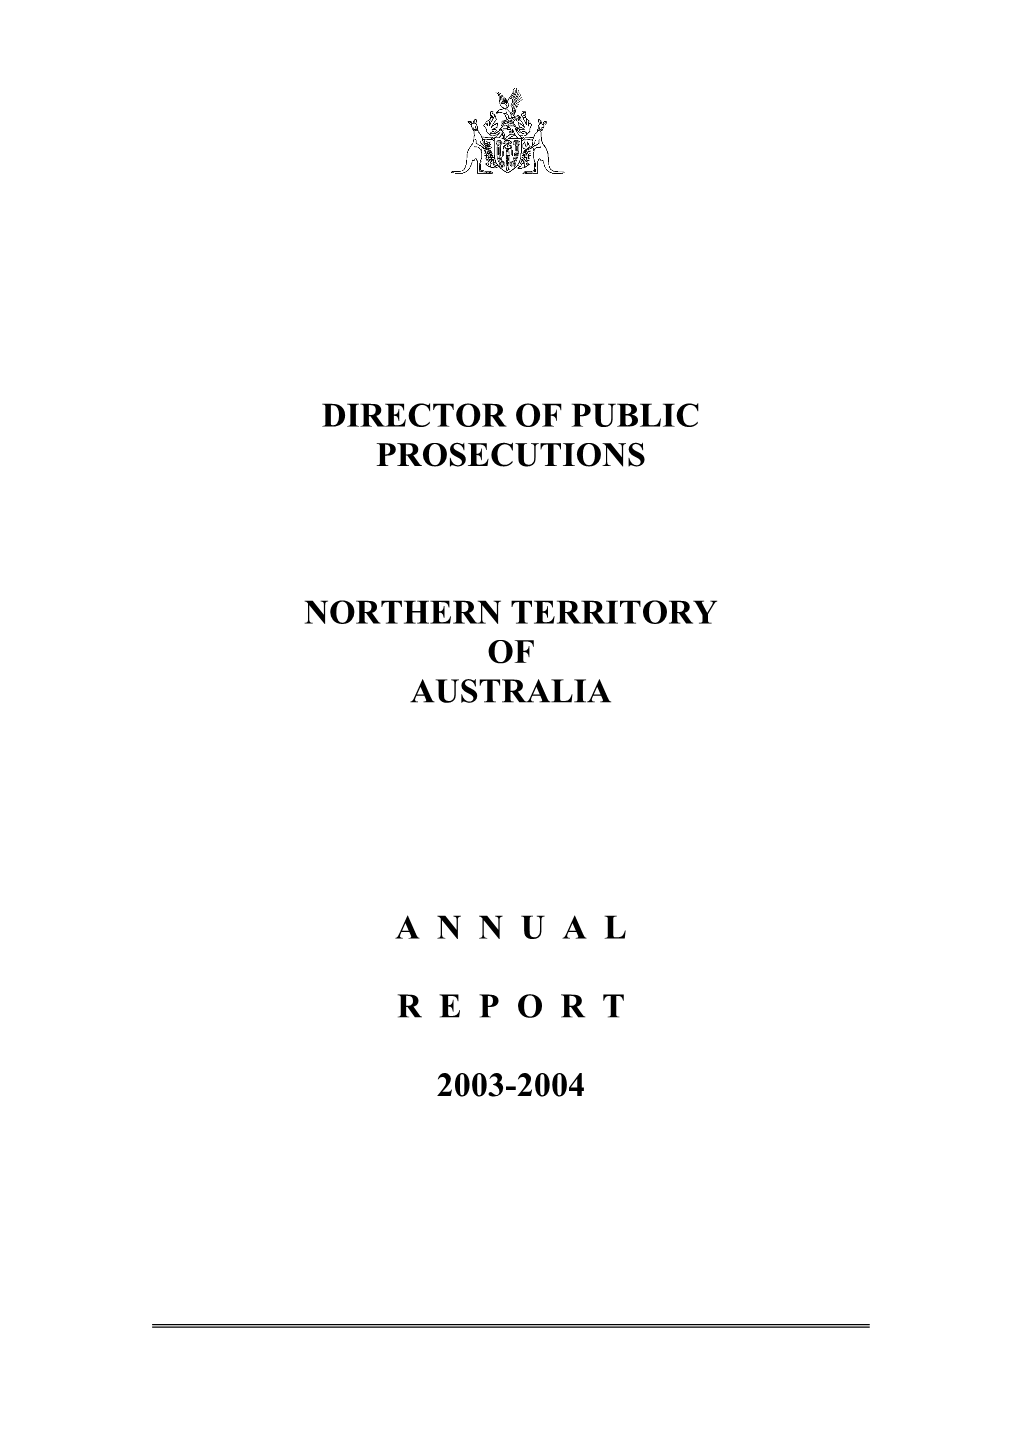 2003-2004 DPP Annual Report